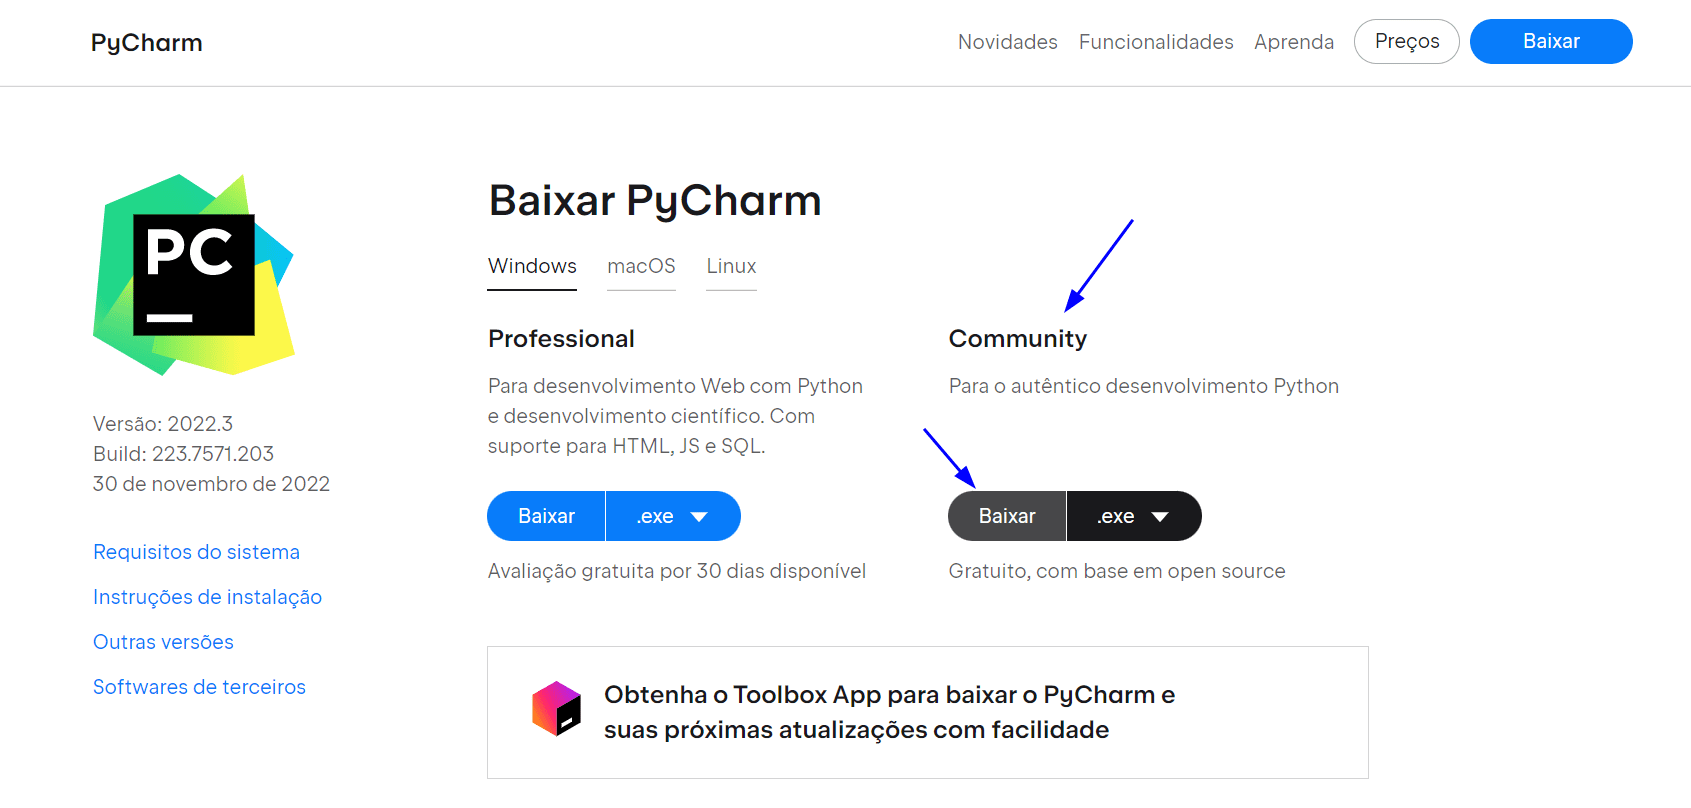 Página de download do PyCharm com o botão “Baixar” em cinza do lado direito da página, abaixo da frase “Baixar Pycharm” e da opção “Commmunity”. À esquerda está a opção Professional, com o botão de download em azul.